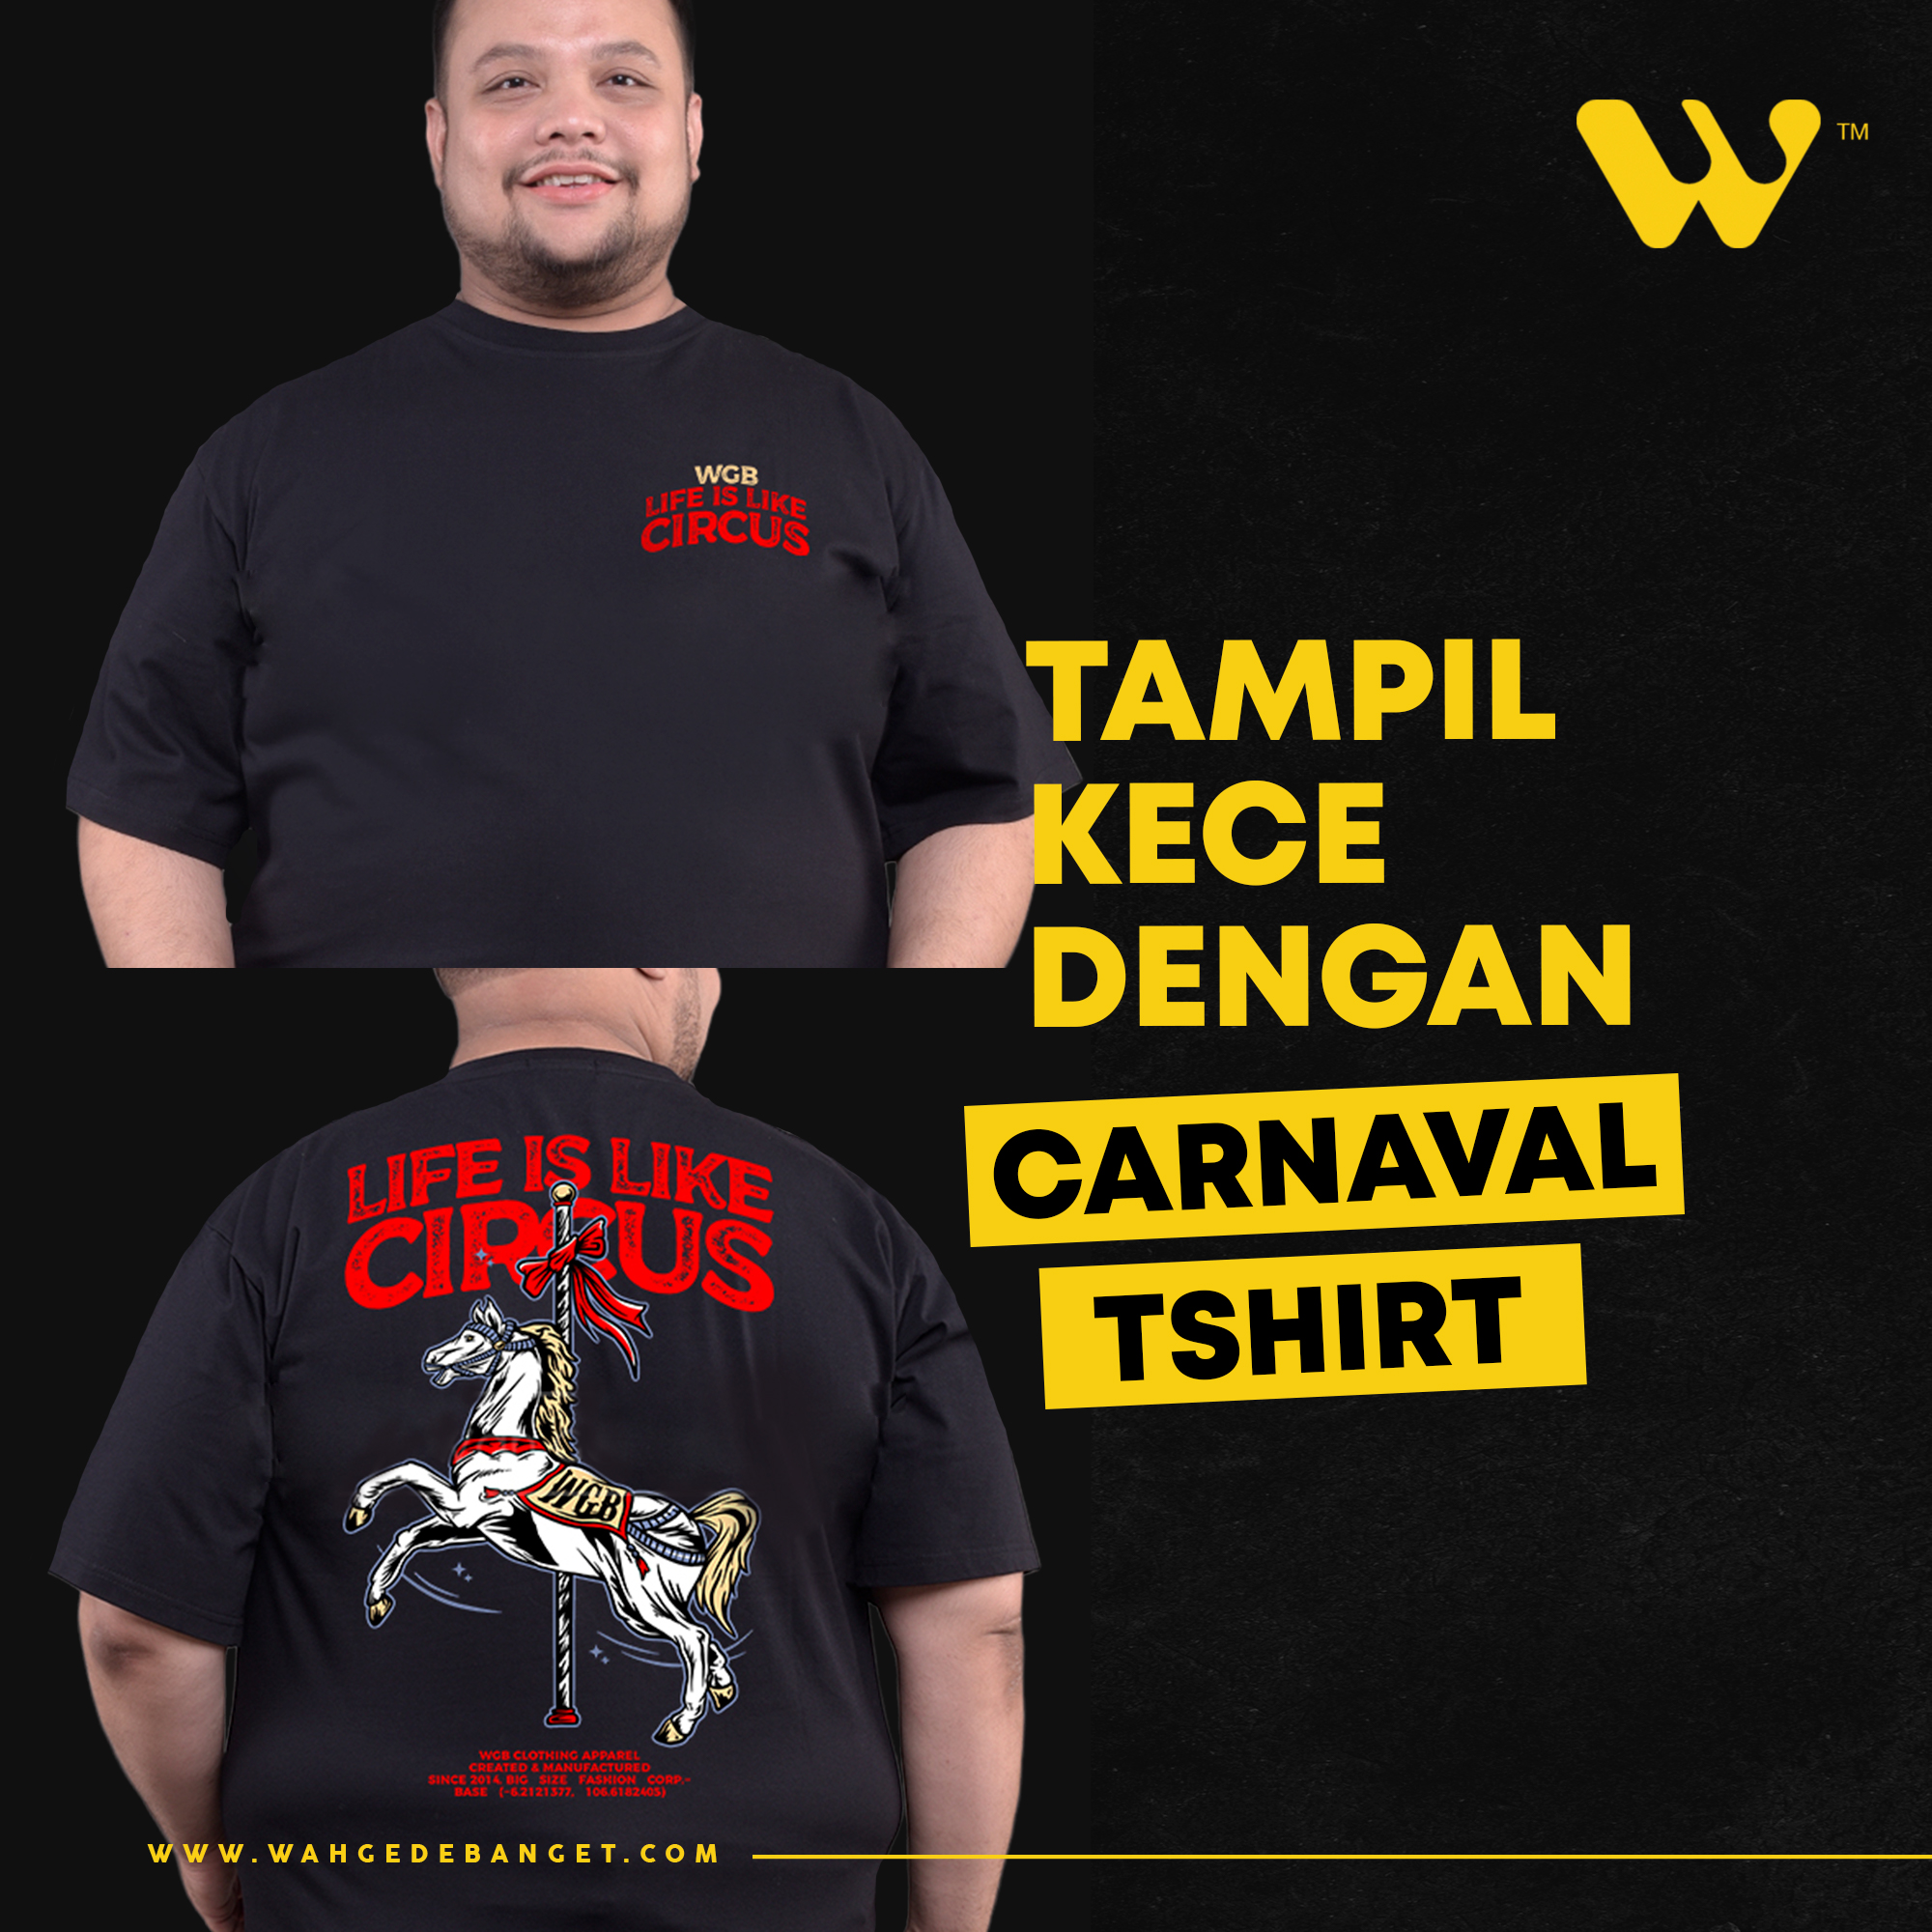 Tampil Kece dengan Carnaval Tshirt image